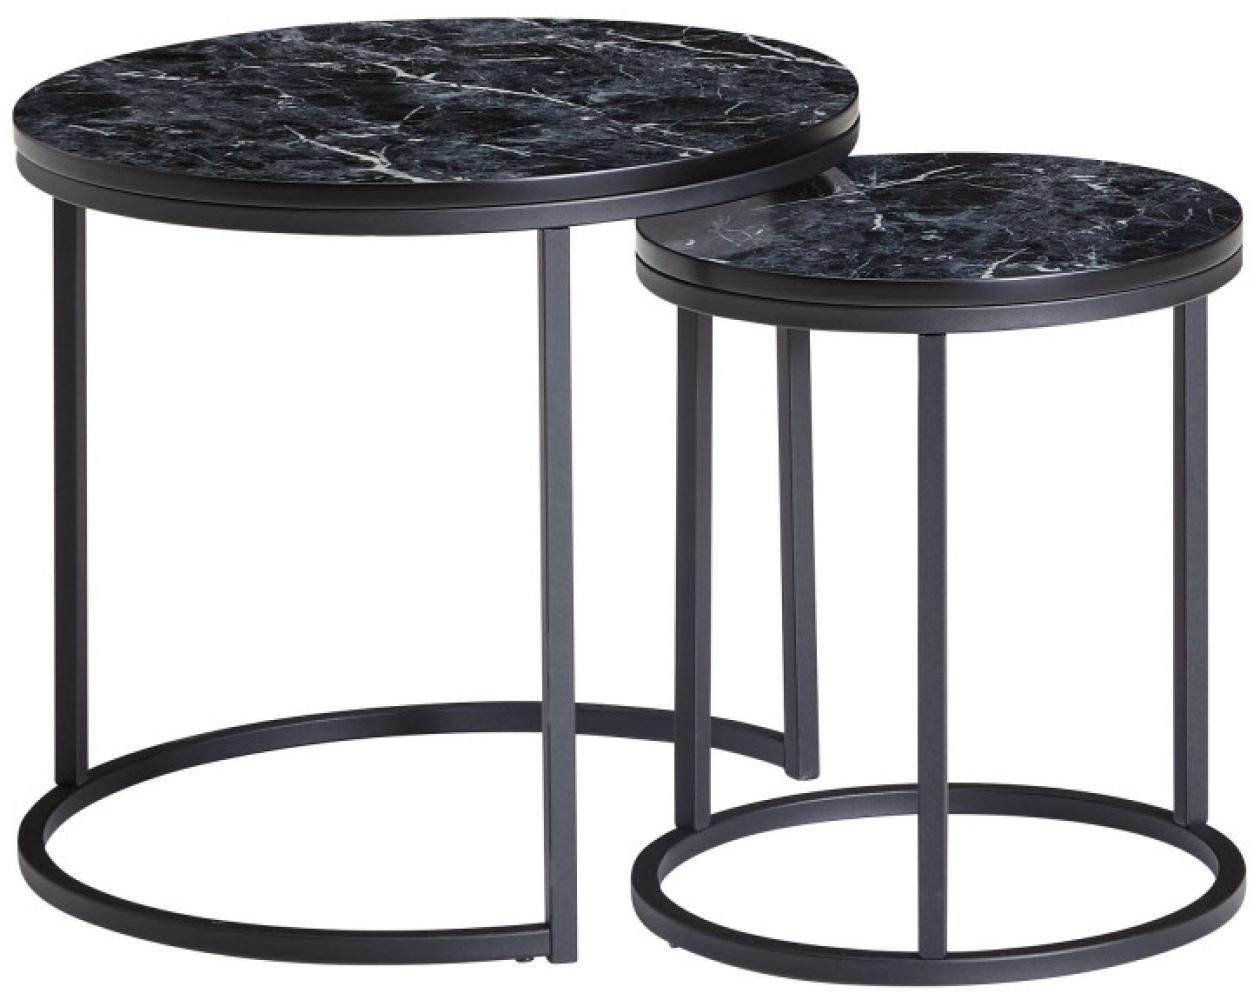 Wohnling Design Beistelltisch 2er Set Marmor Optik Rund | Couchtisch 2-teilig Tischgestell Metall Bild 1